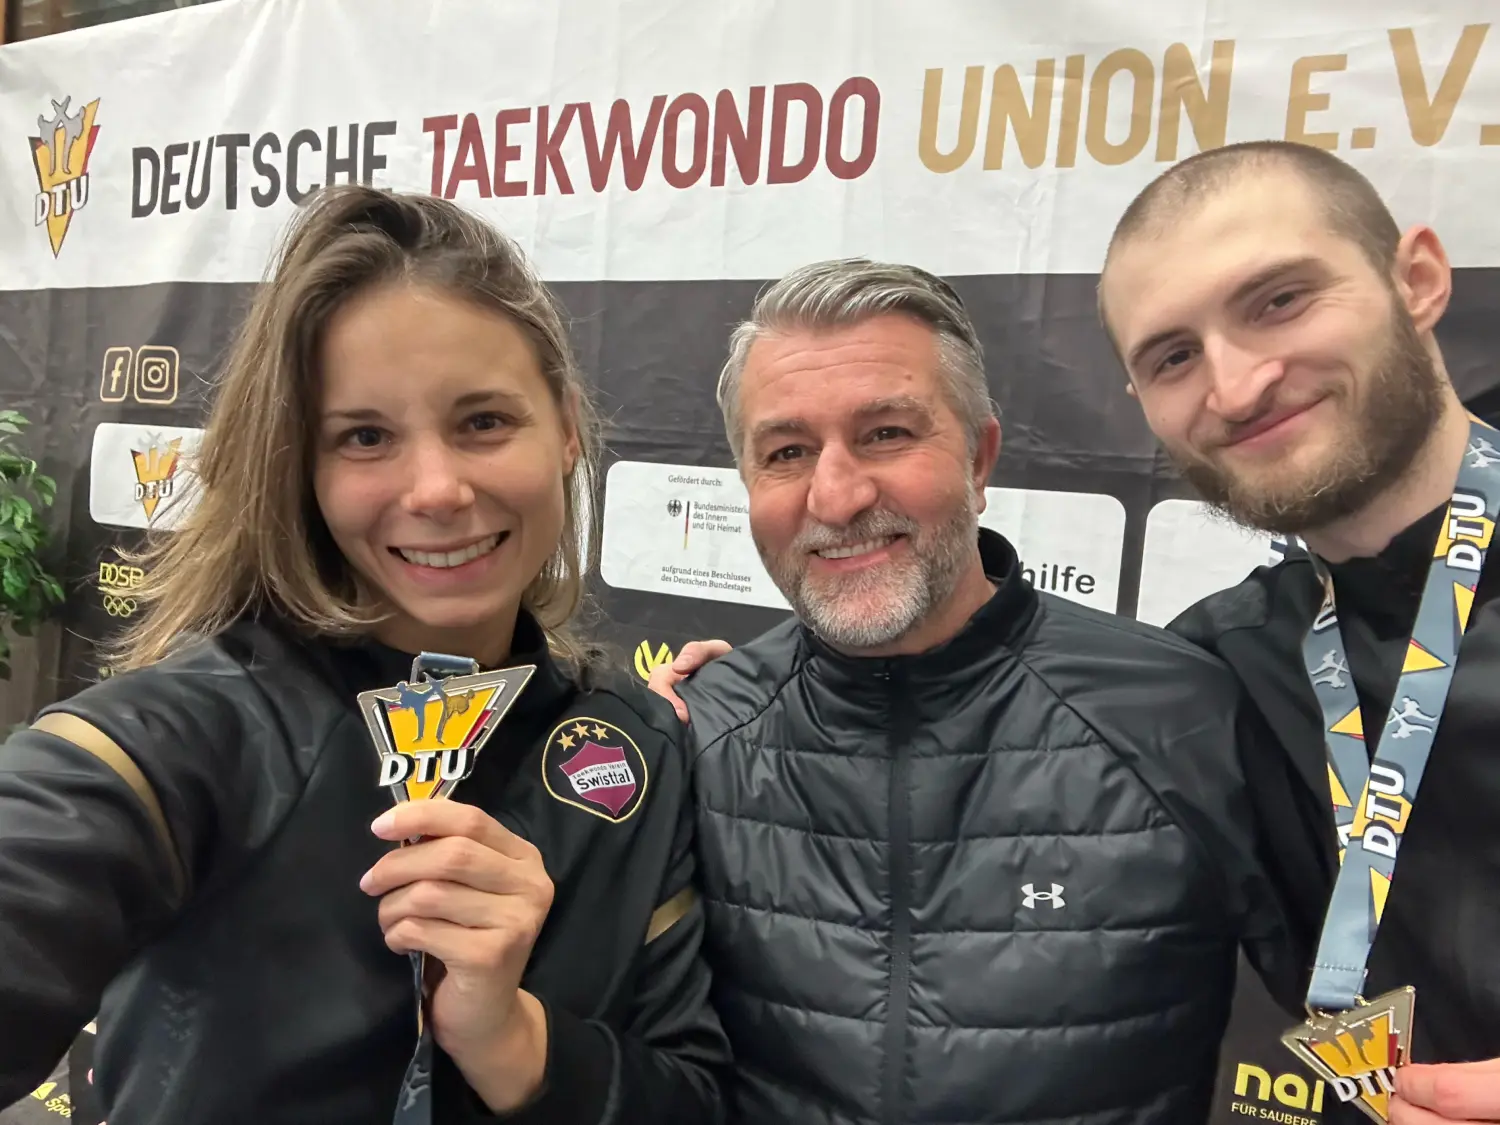 Goldene Momente bei den Deutschen Meisterschaften: Yanna Schneider und Martin Stach feiern erneut DM-TITEL!